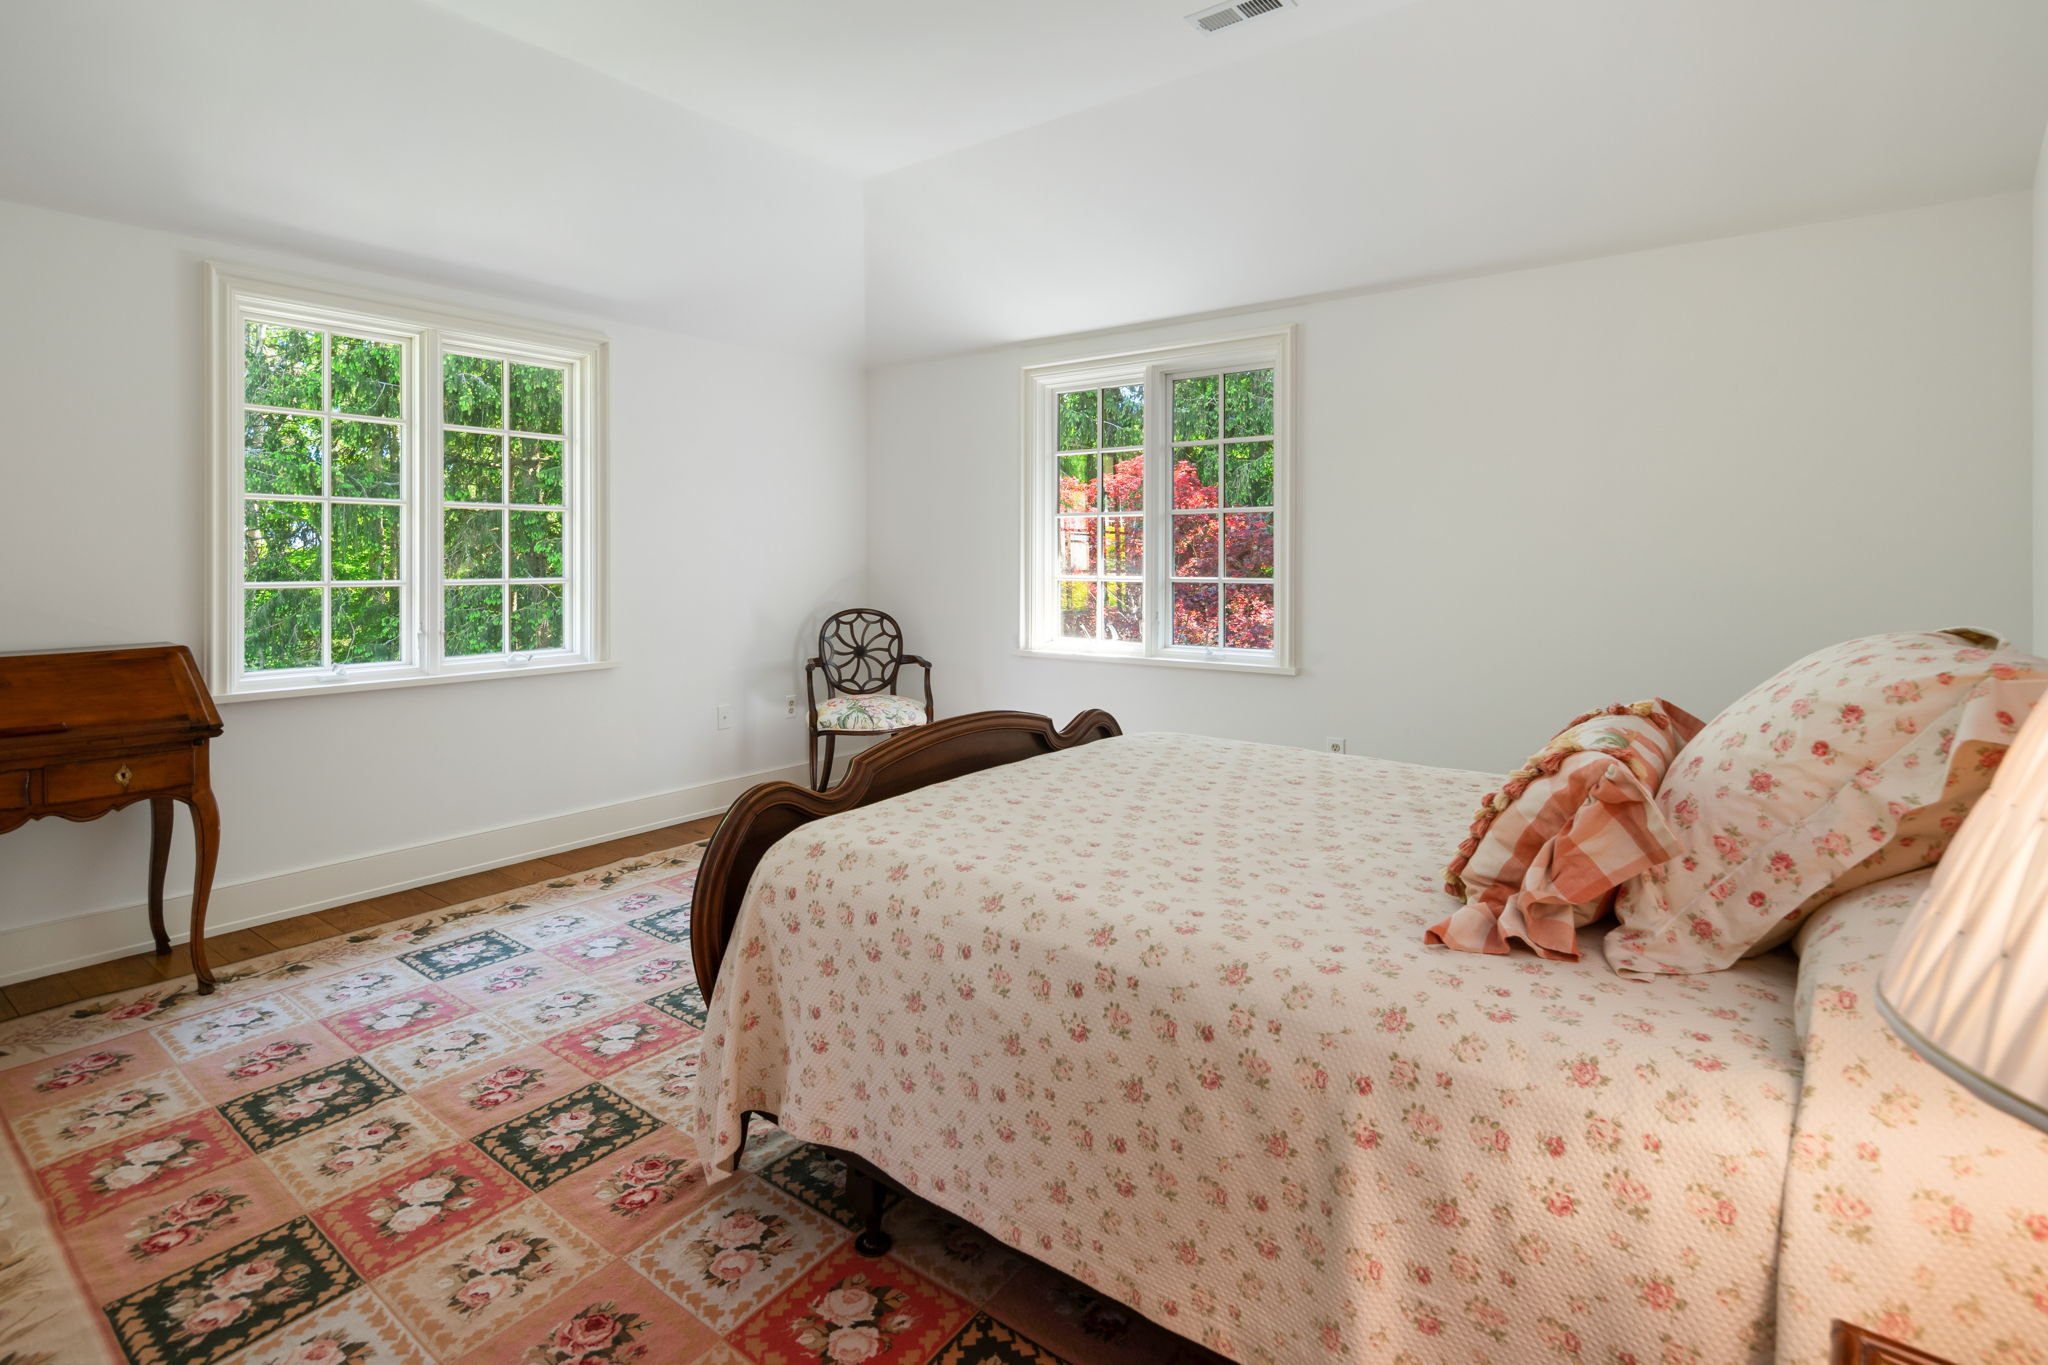 Bedroom at 100 Nod Hill, Wilton_DSC08981.jpg